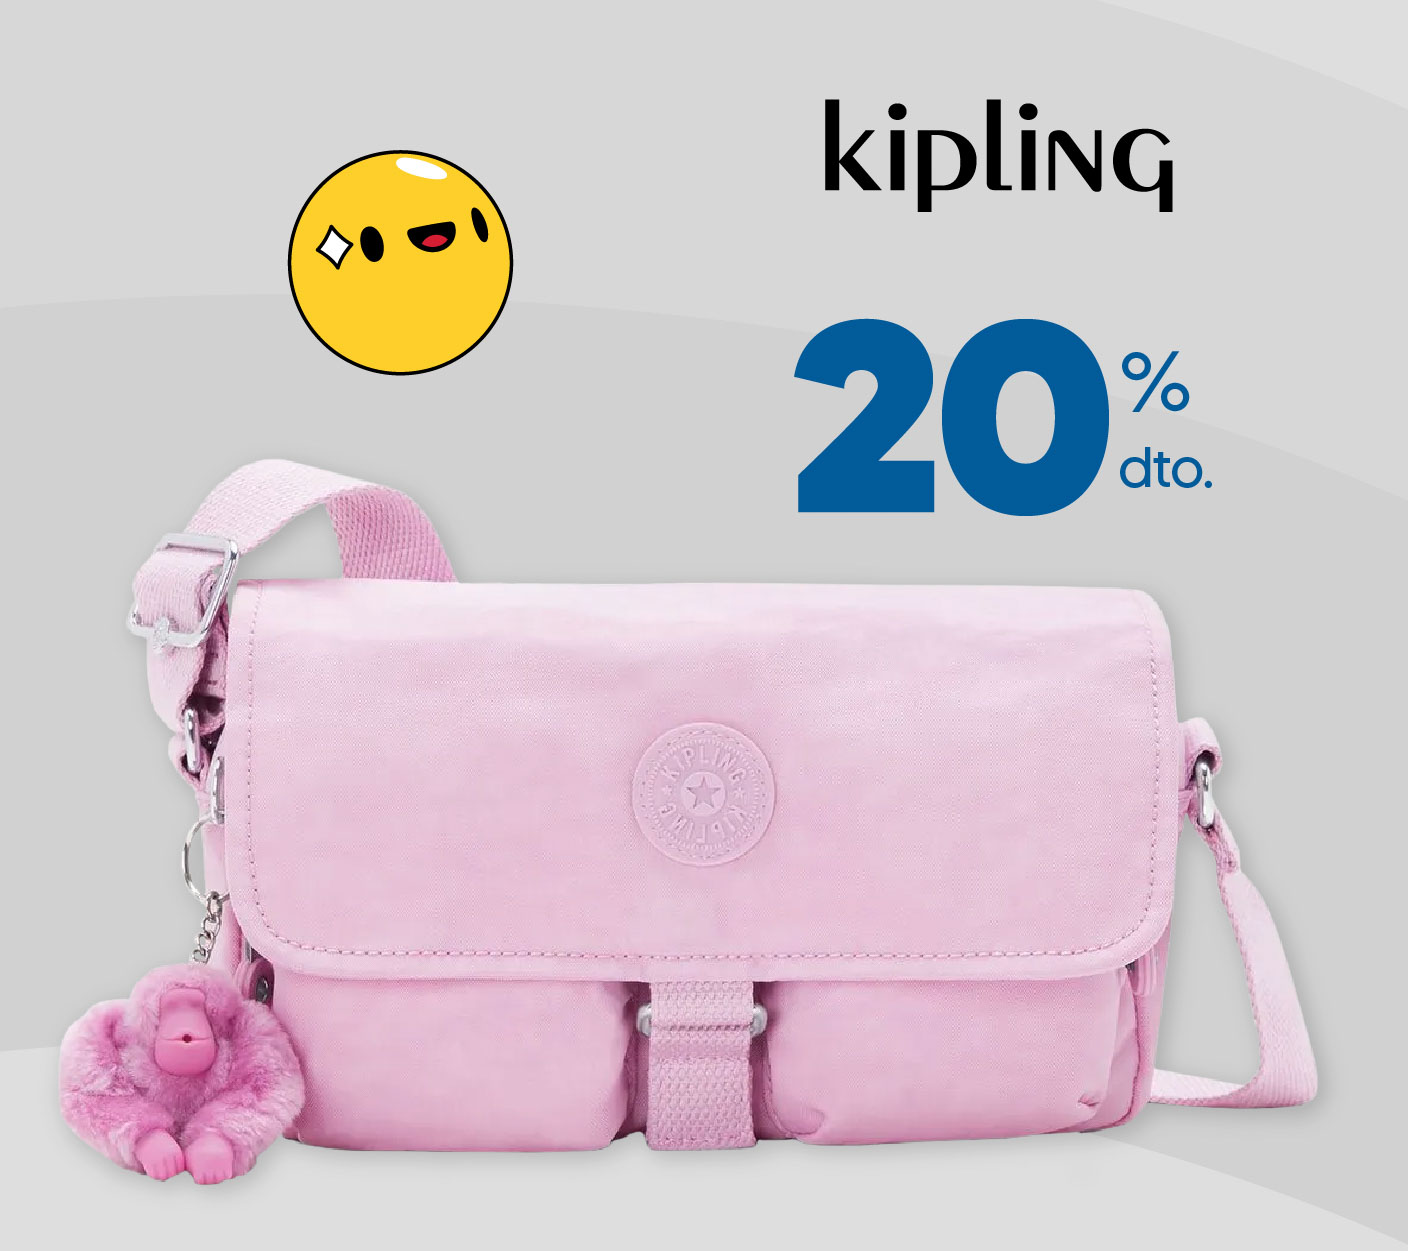 Hasta 20% dto. en bolsos Kipling